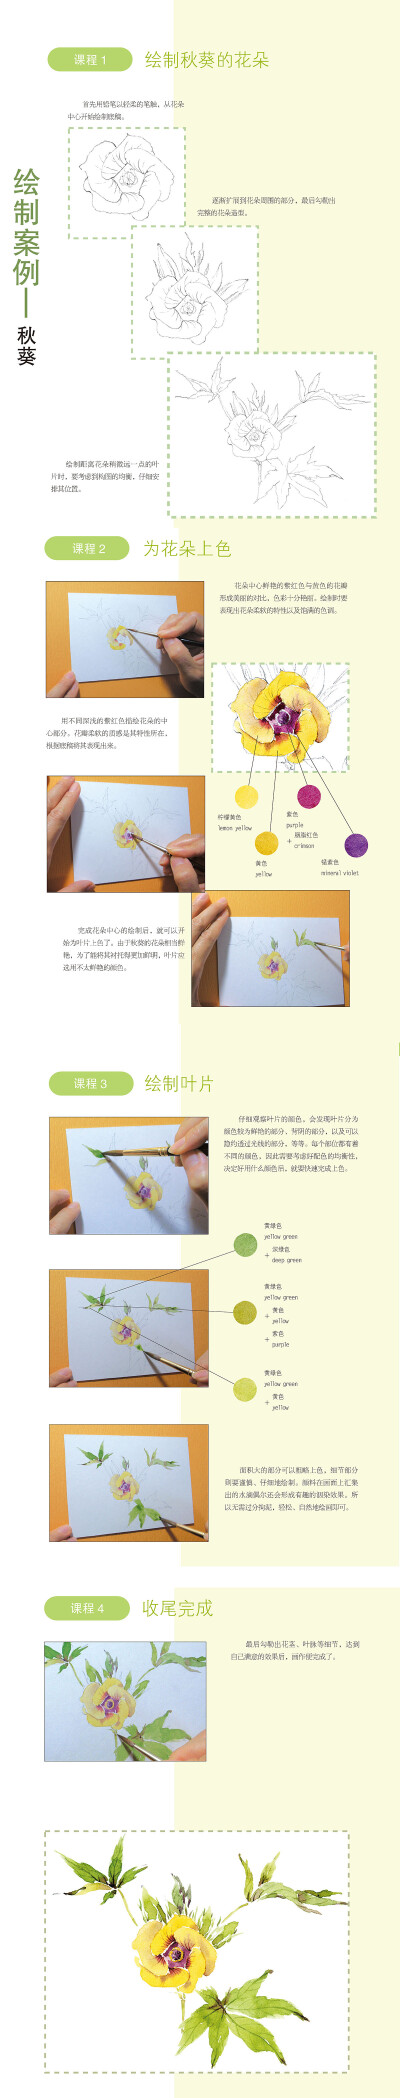 本案例摘自人民邮电出版社出版的《水彩花时间：60种你可能从来没画过的水色闲花》http://product.dangdang.com/23895510.html